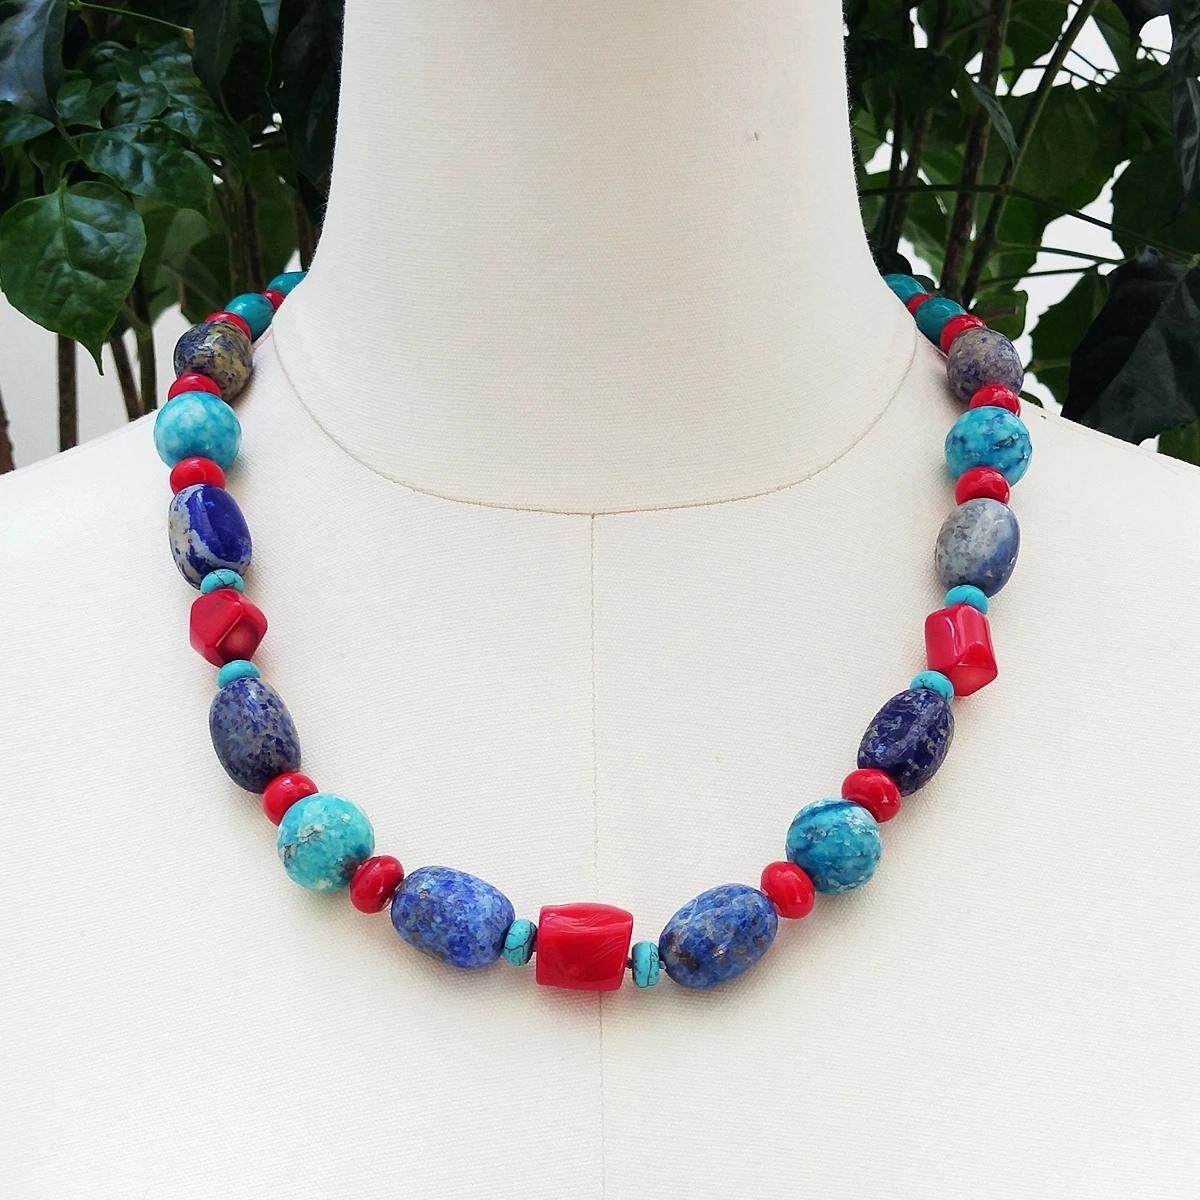 

Lii Ji Настоящий камень Синий Лазурит фотоколье ожерелье чокер ожерелье 60 см женские ювелирные изделия в наличии распродажа